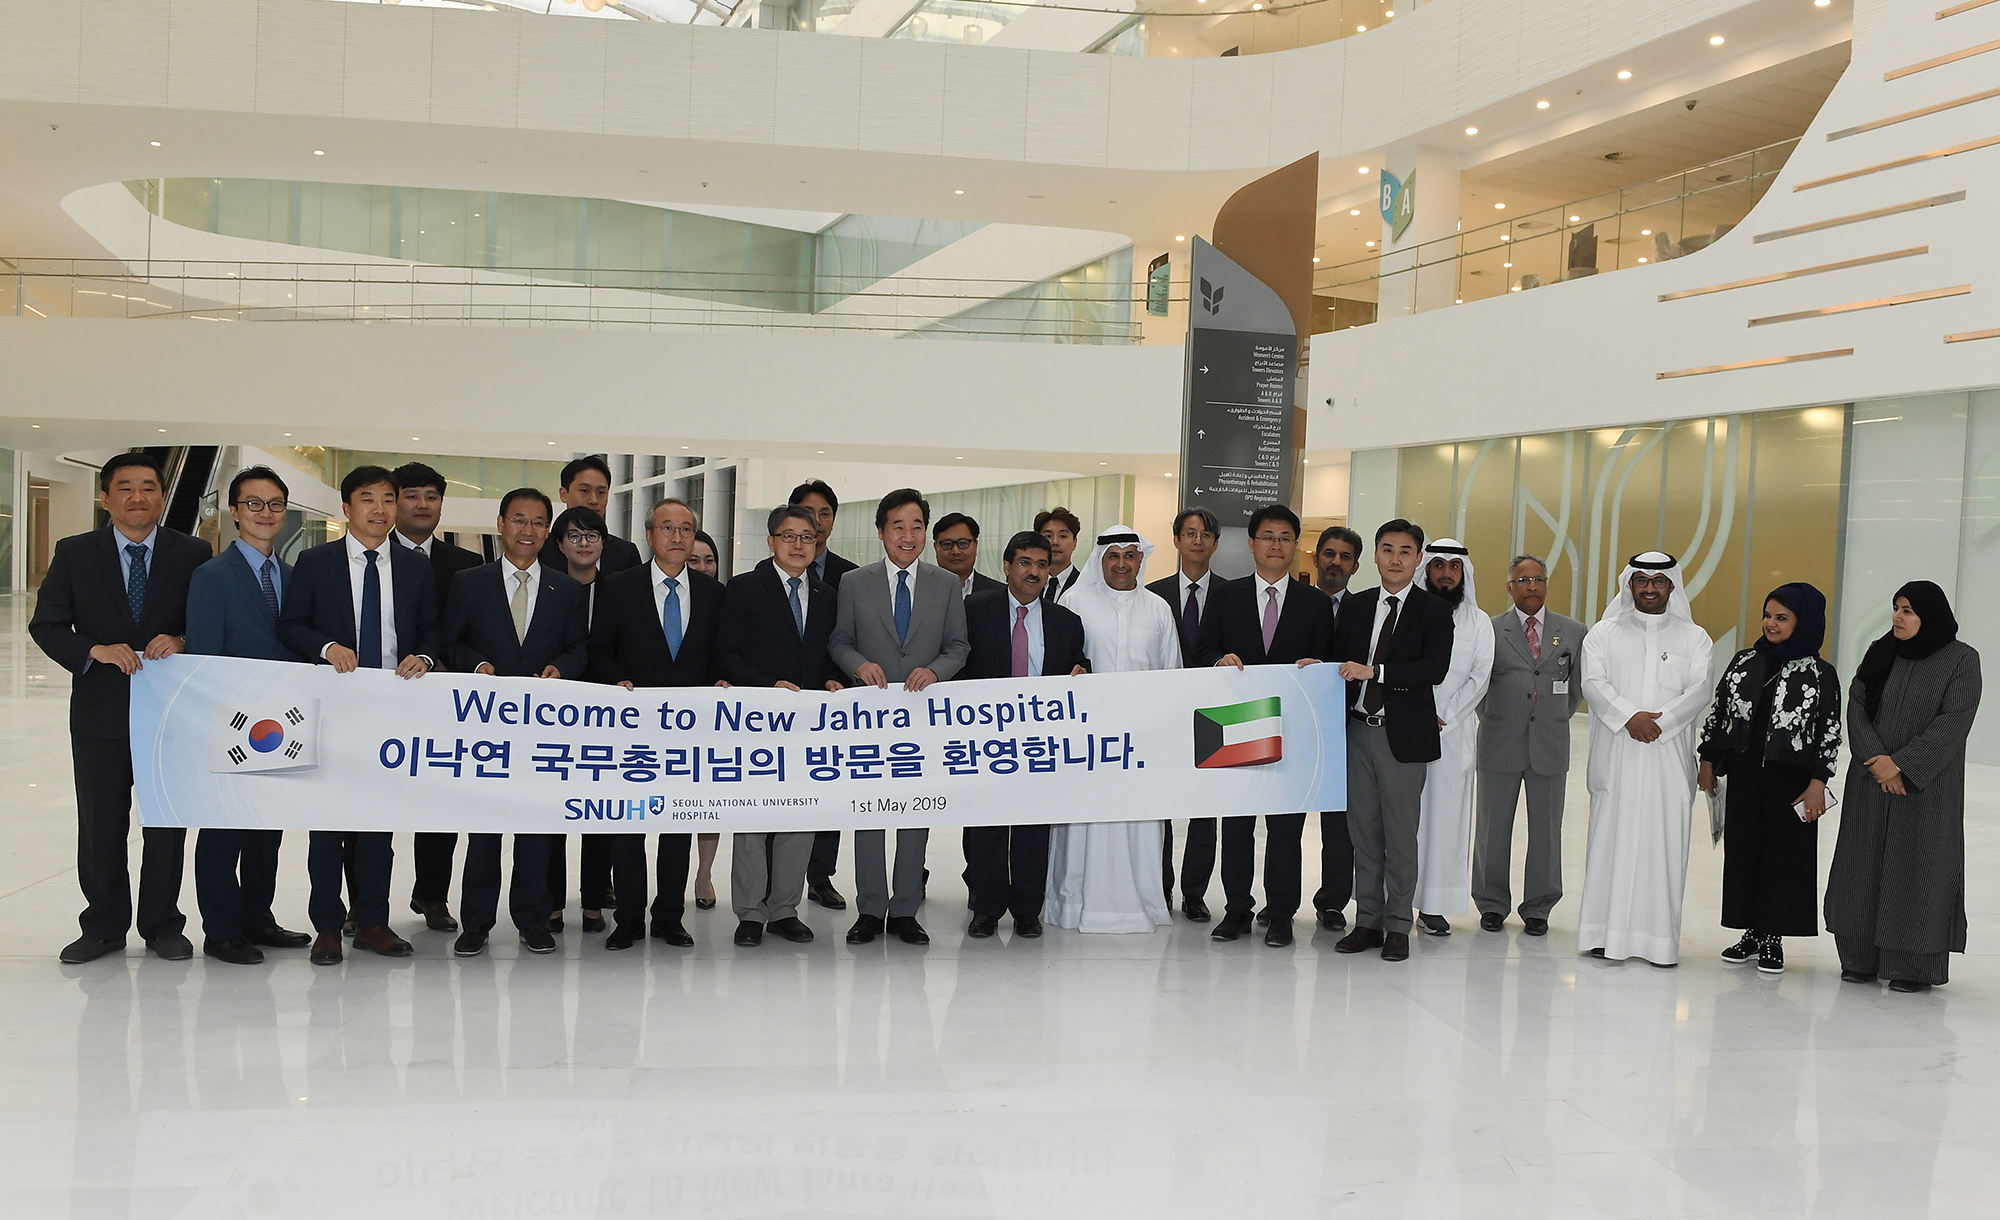 رئيس وزراء جمهورية كوريا الصديقة لي ناكيون والوفد المرافق له اليوم بزيارة مدينة الجهراء الطبية